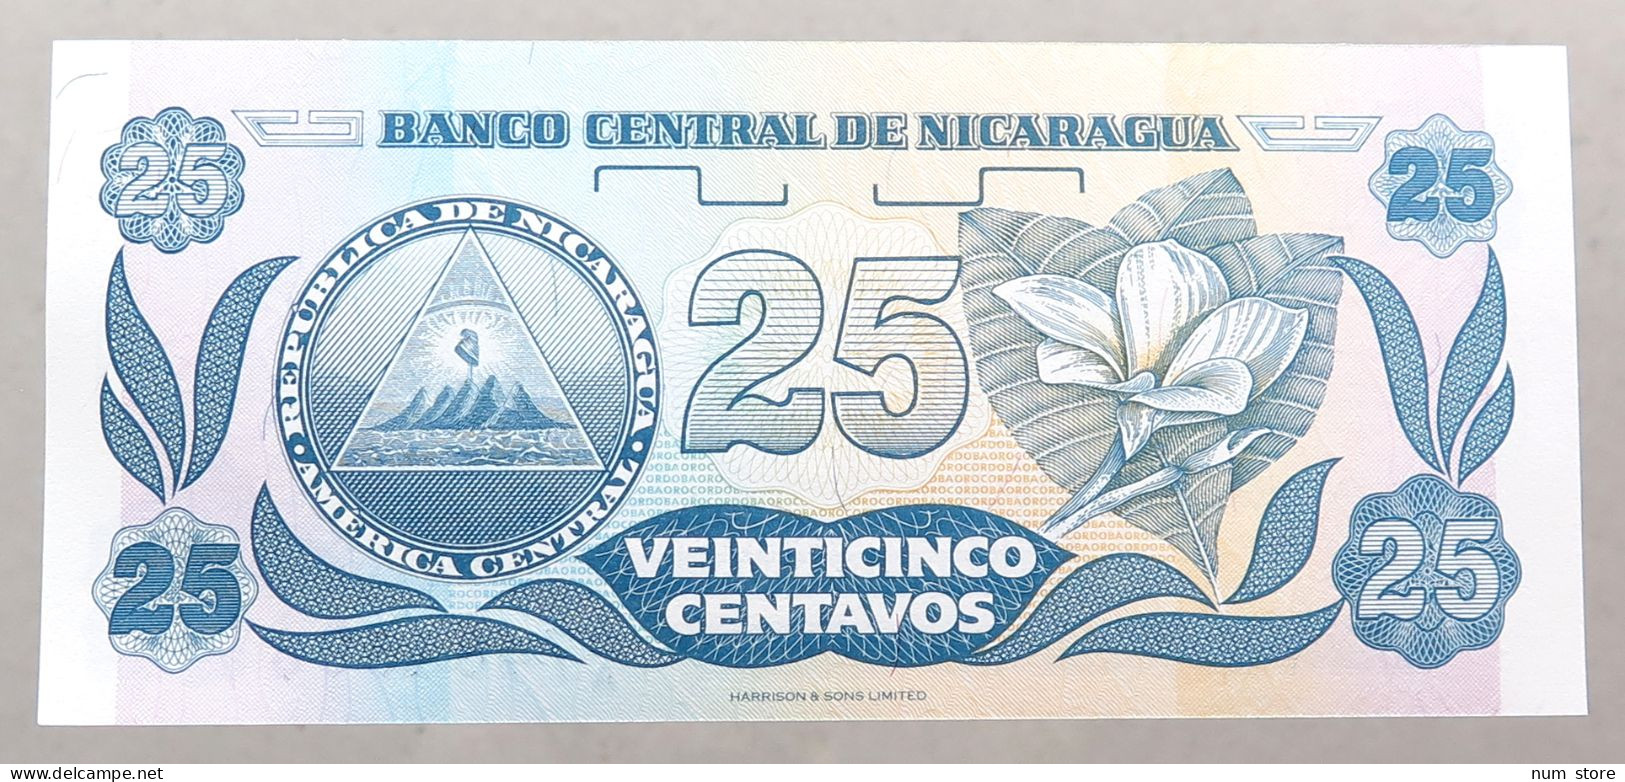 NICARAGUA 25 CENTAVOS TOP #alb051 1665 - Nicaragua